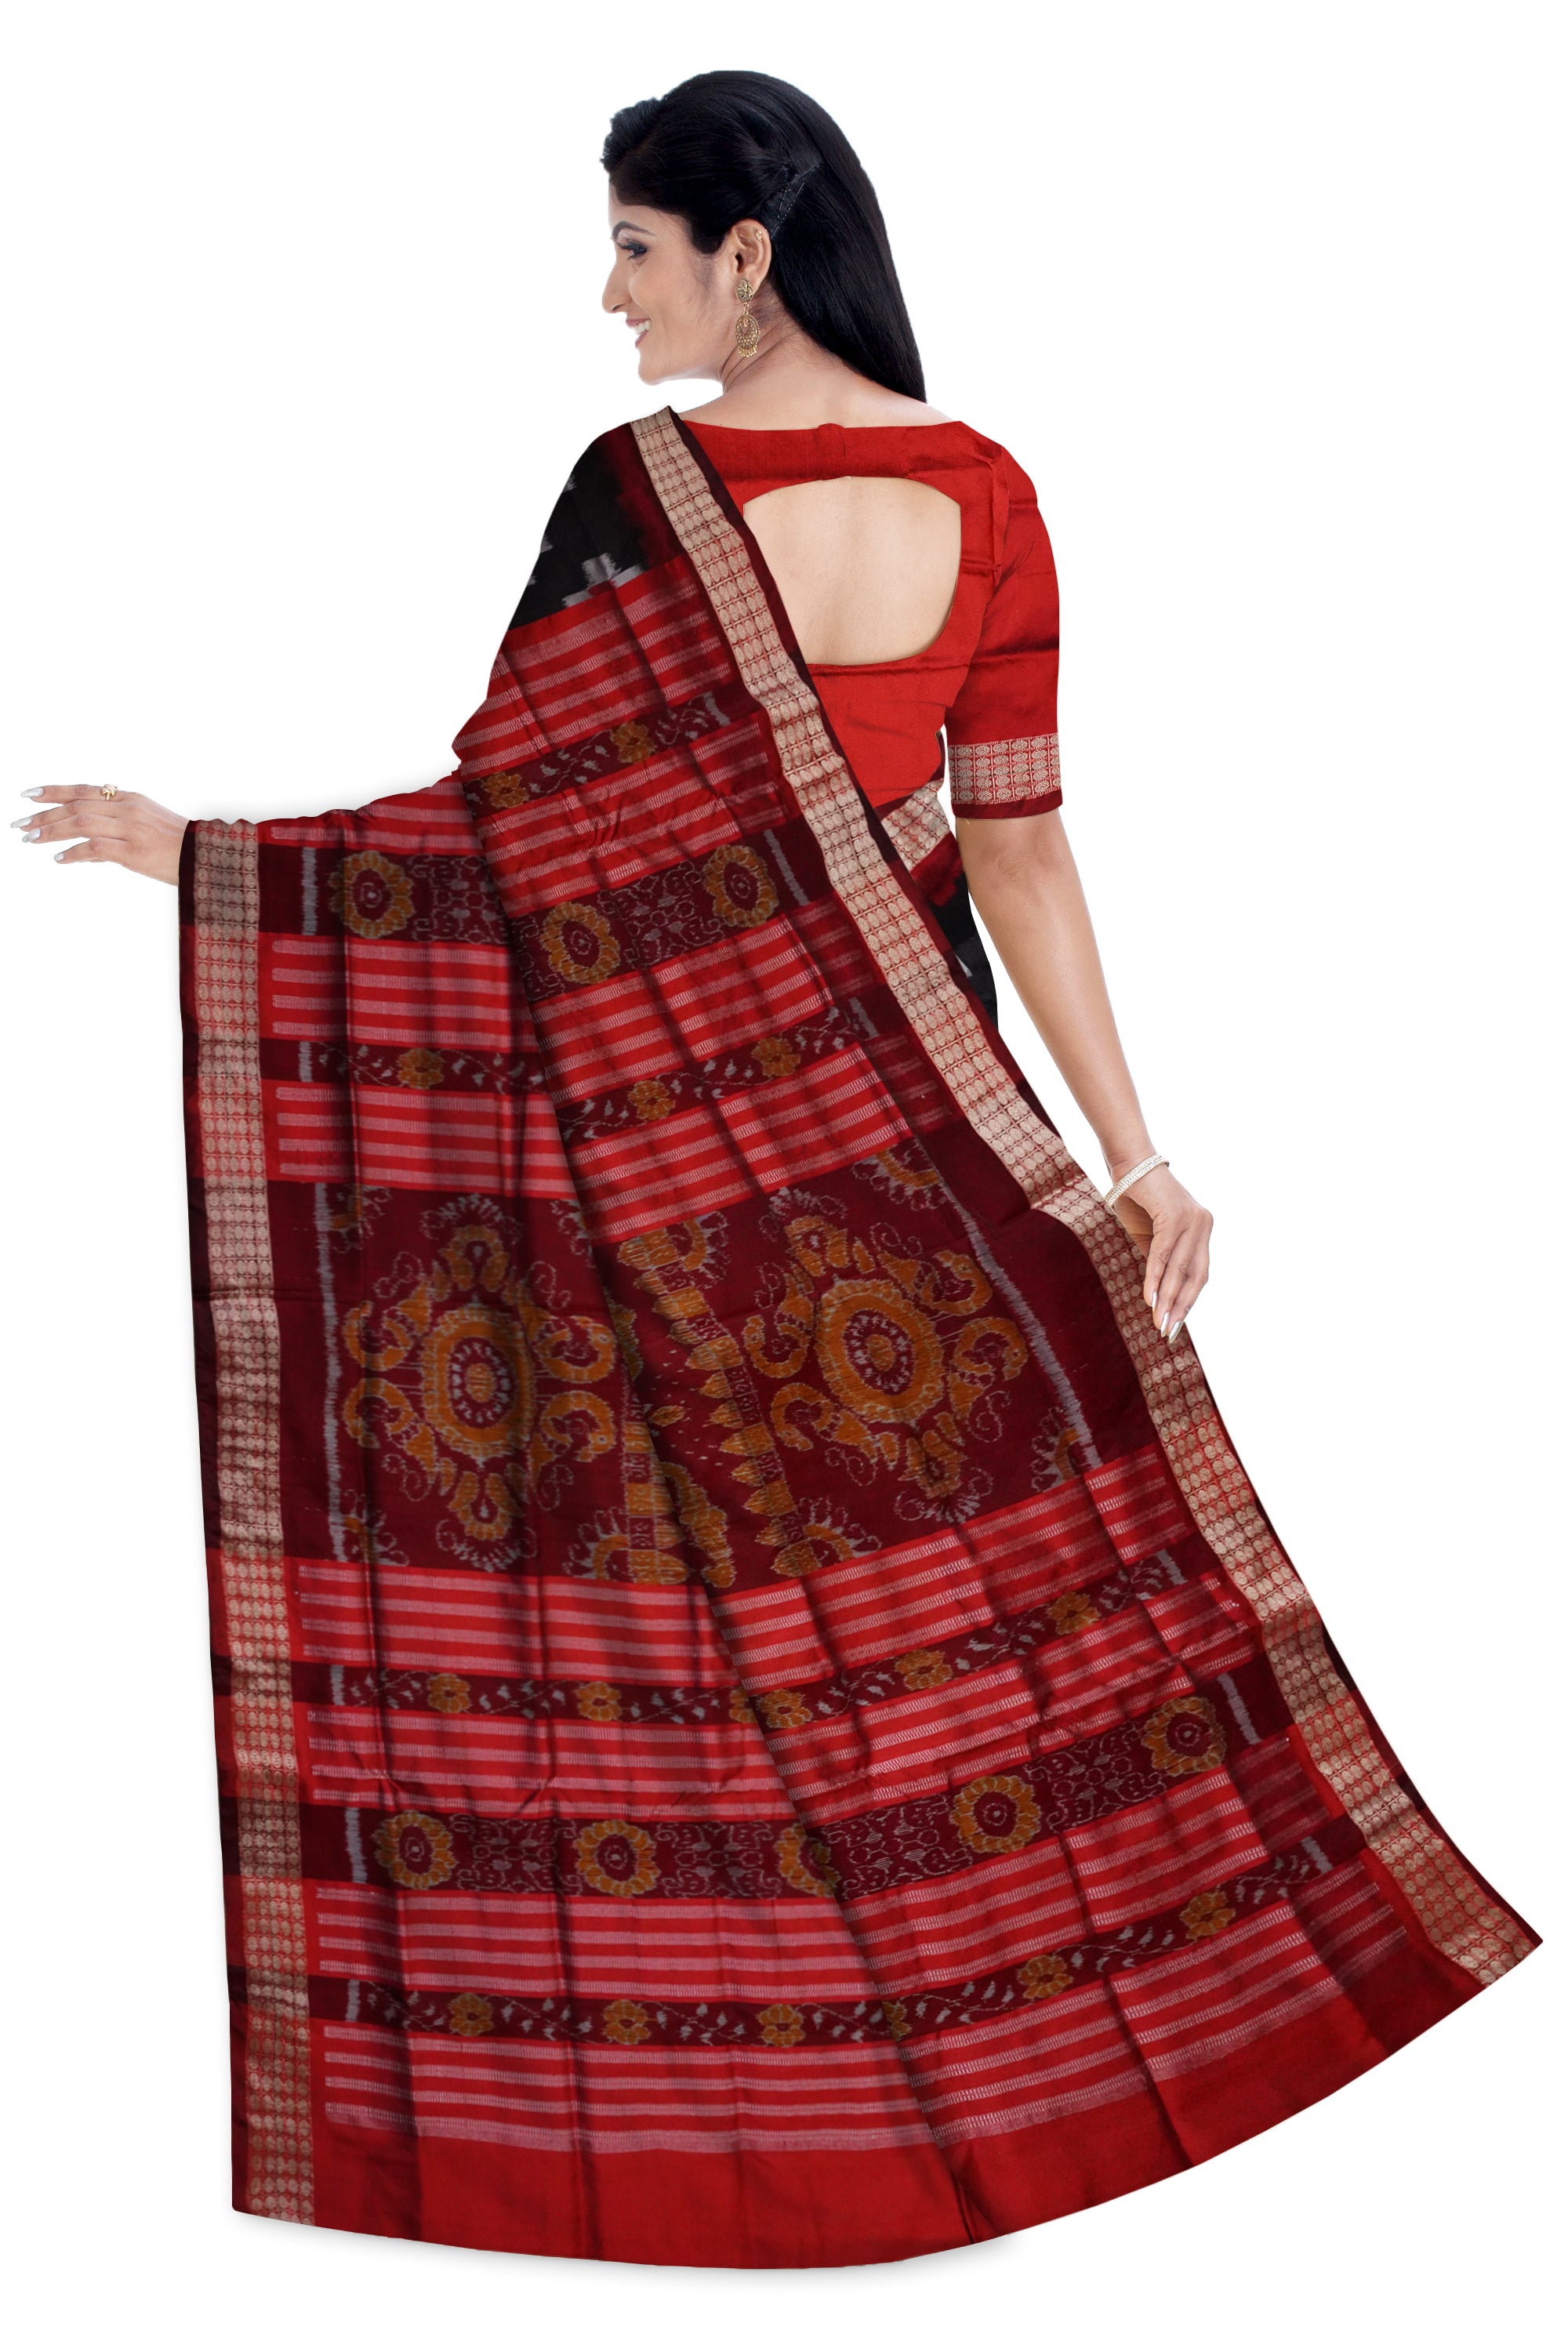 Black and Maroon color tara pattern pata saree. - Koshali Arts & Crafts Enterprise